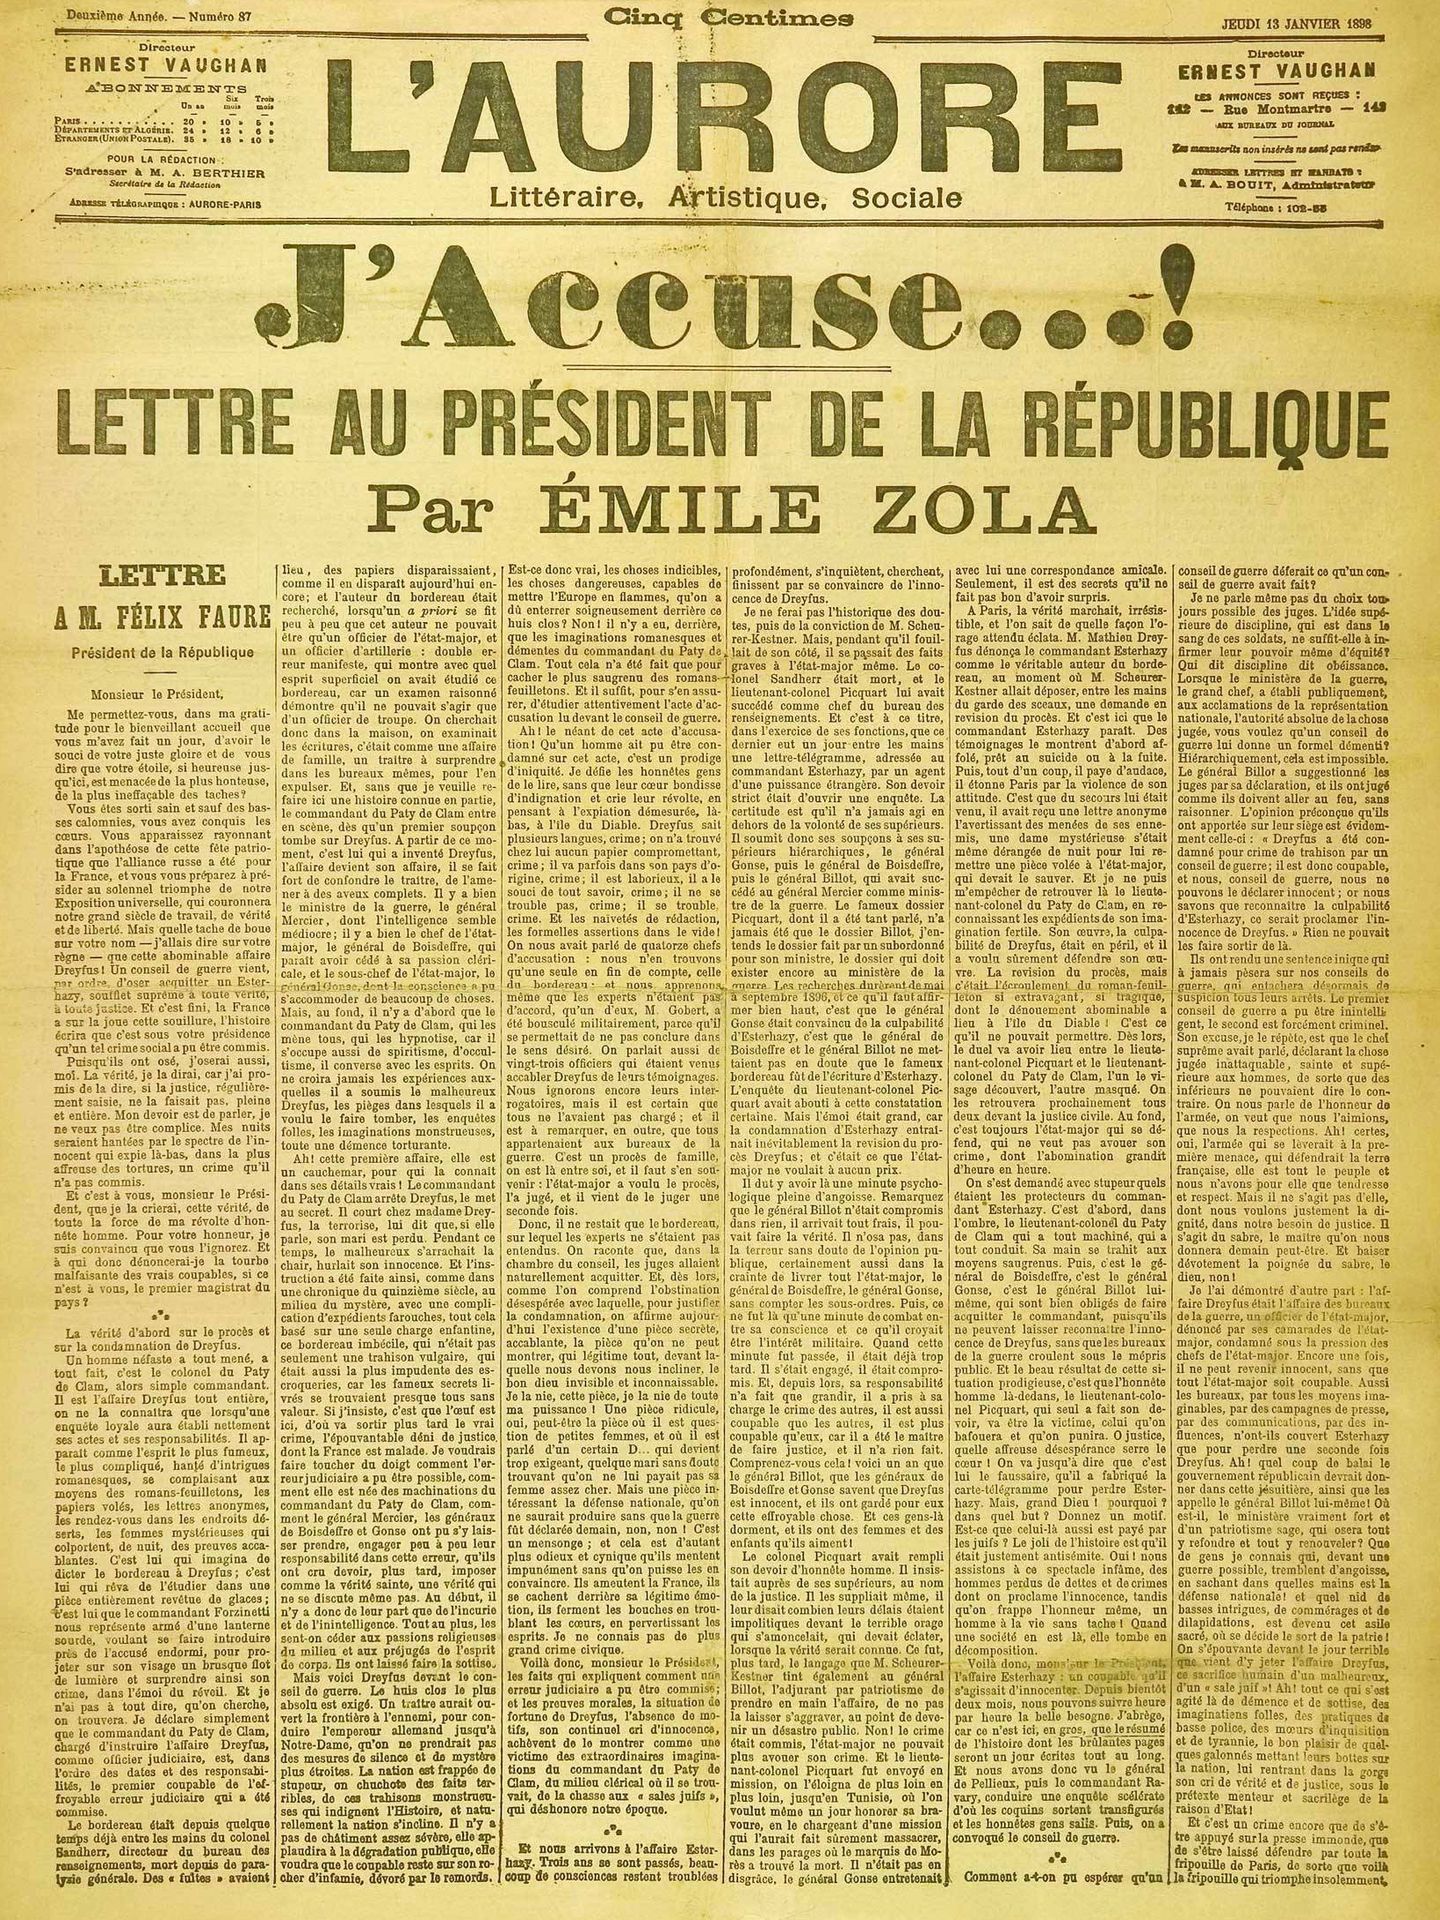 'J'accuse, de Zola